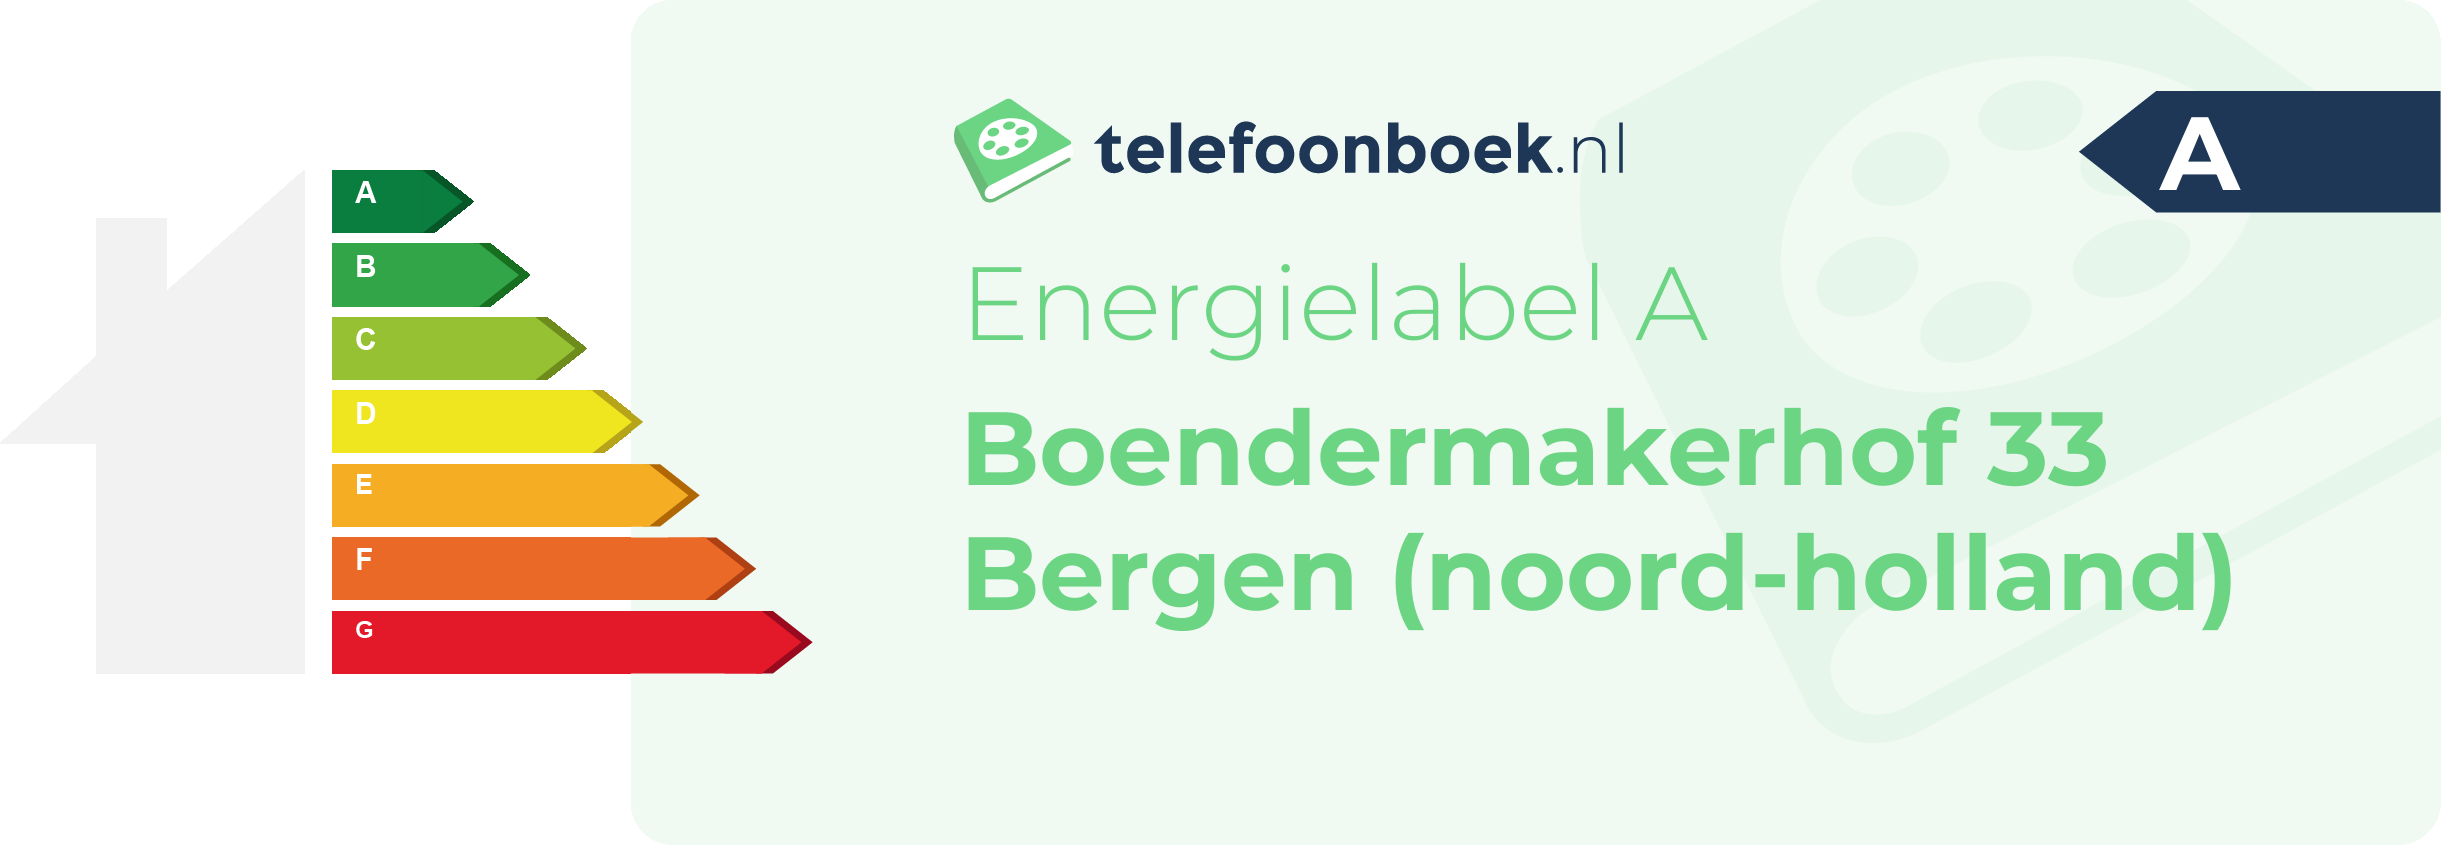 Energielabel Boendermakerhof 33 Bergen (Noord-Holland)